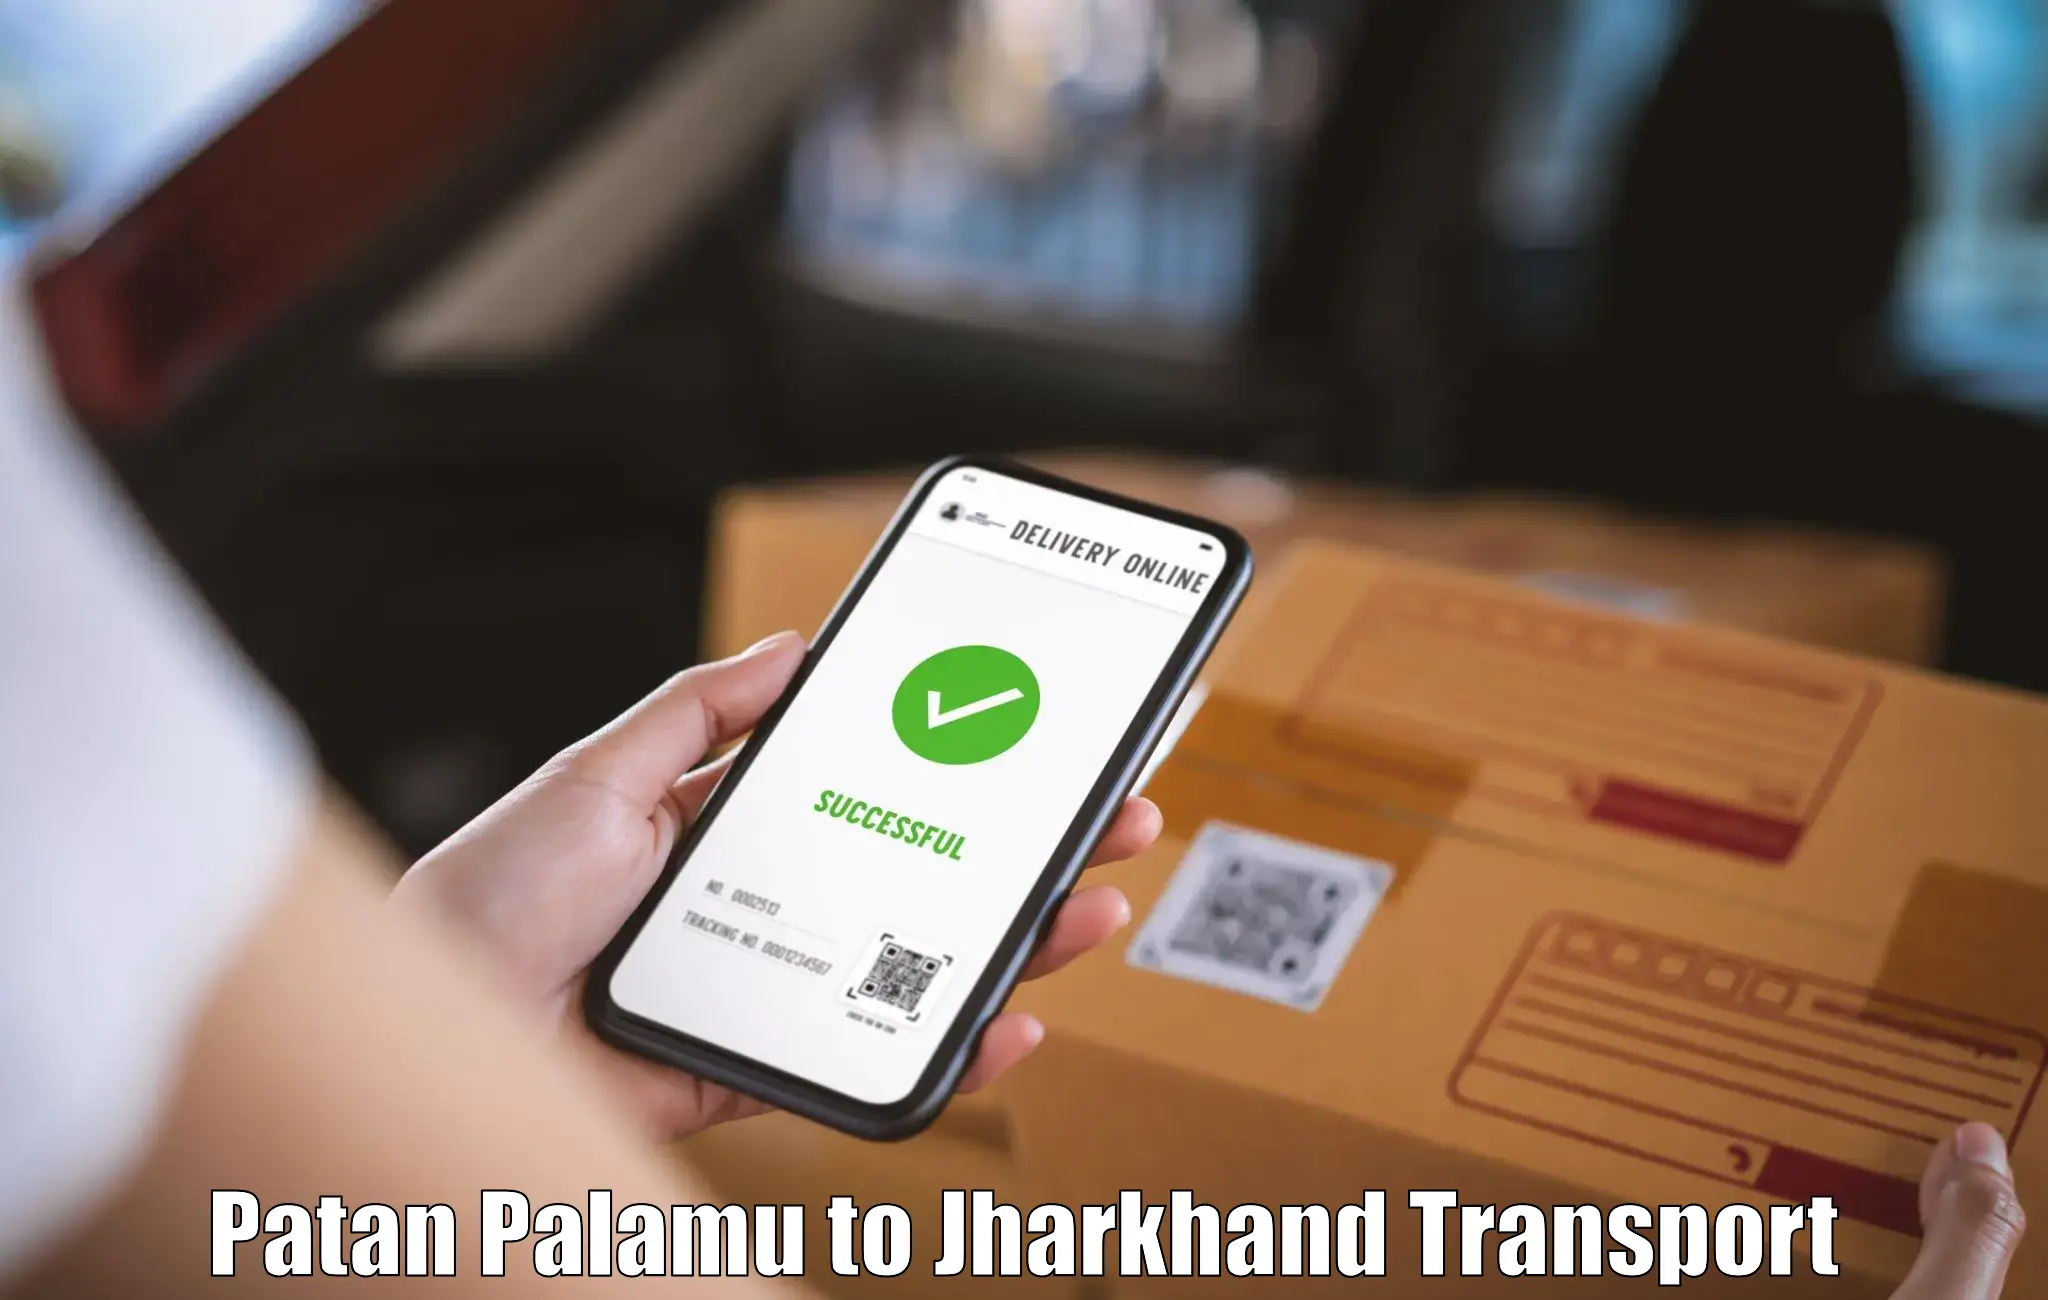 Transport services Patan Palamu to Jharkhand